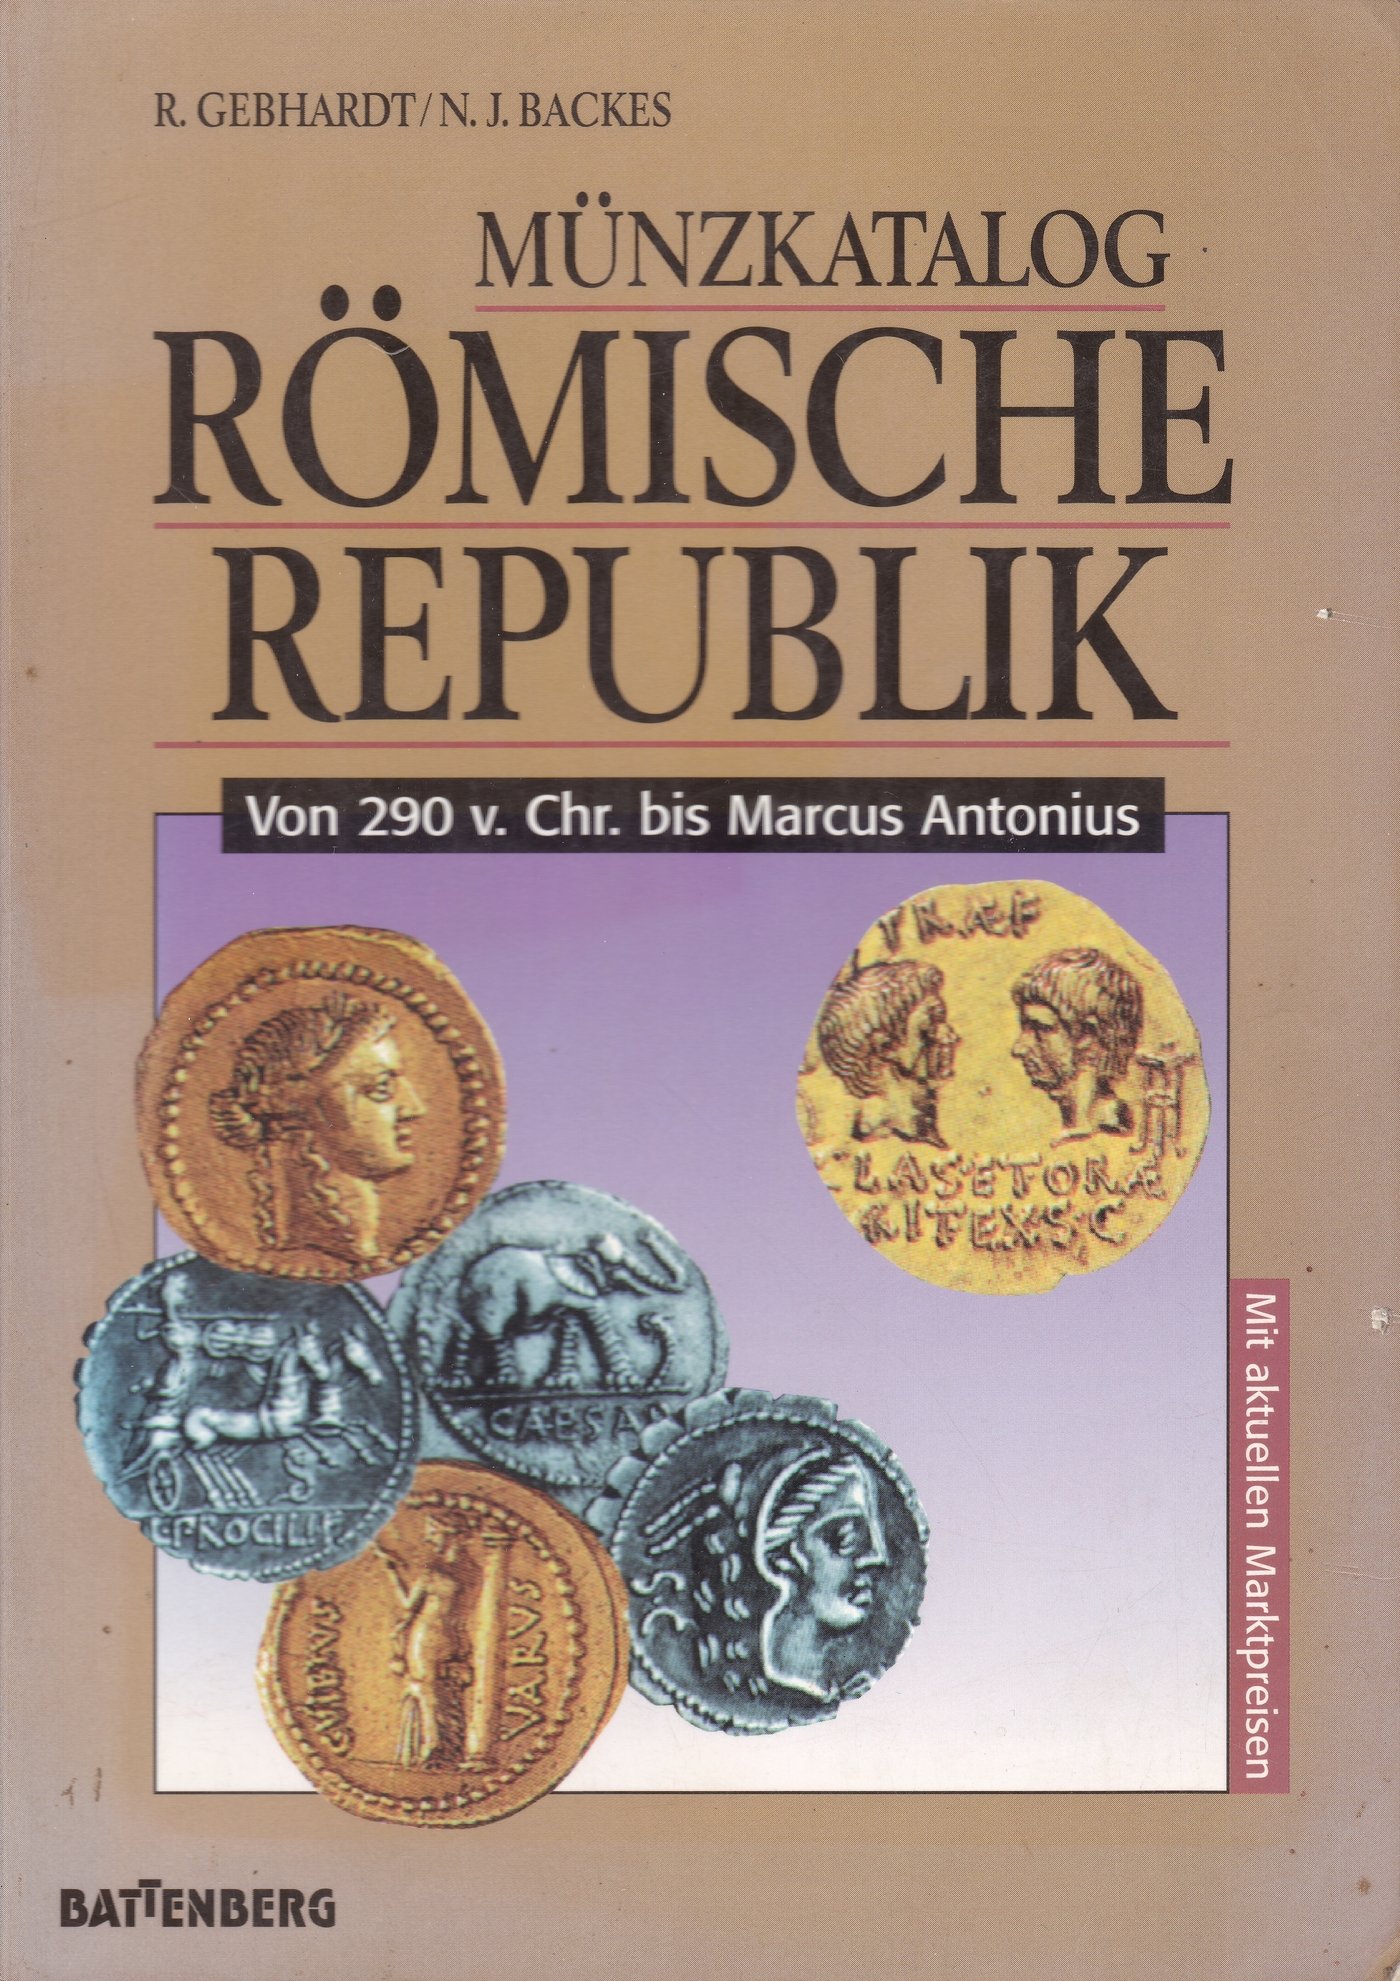 R. Gebhardt; N. J. Backes: Münzkatalog Römische Republik von 290 v. Chr. bis Marcus Antonius (Rippl-Rónai Múzeum CC BY-NC-ND)